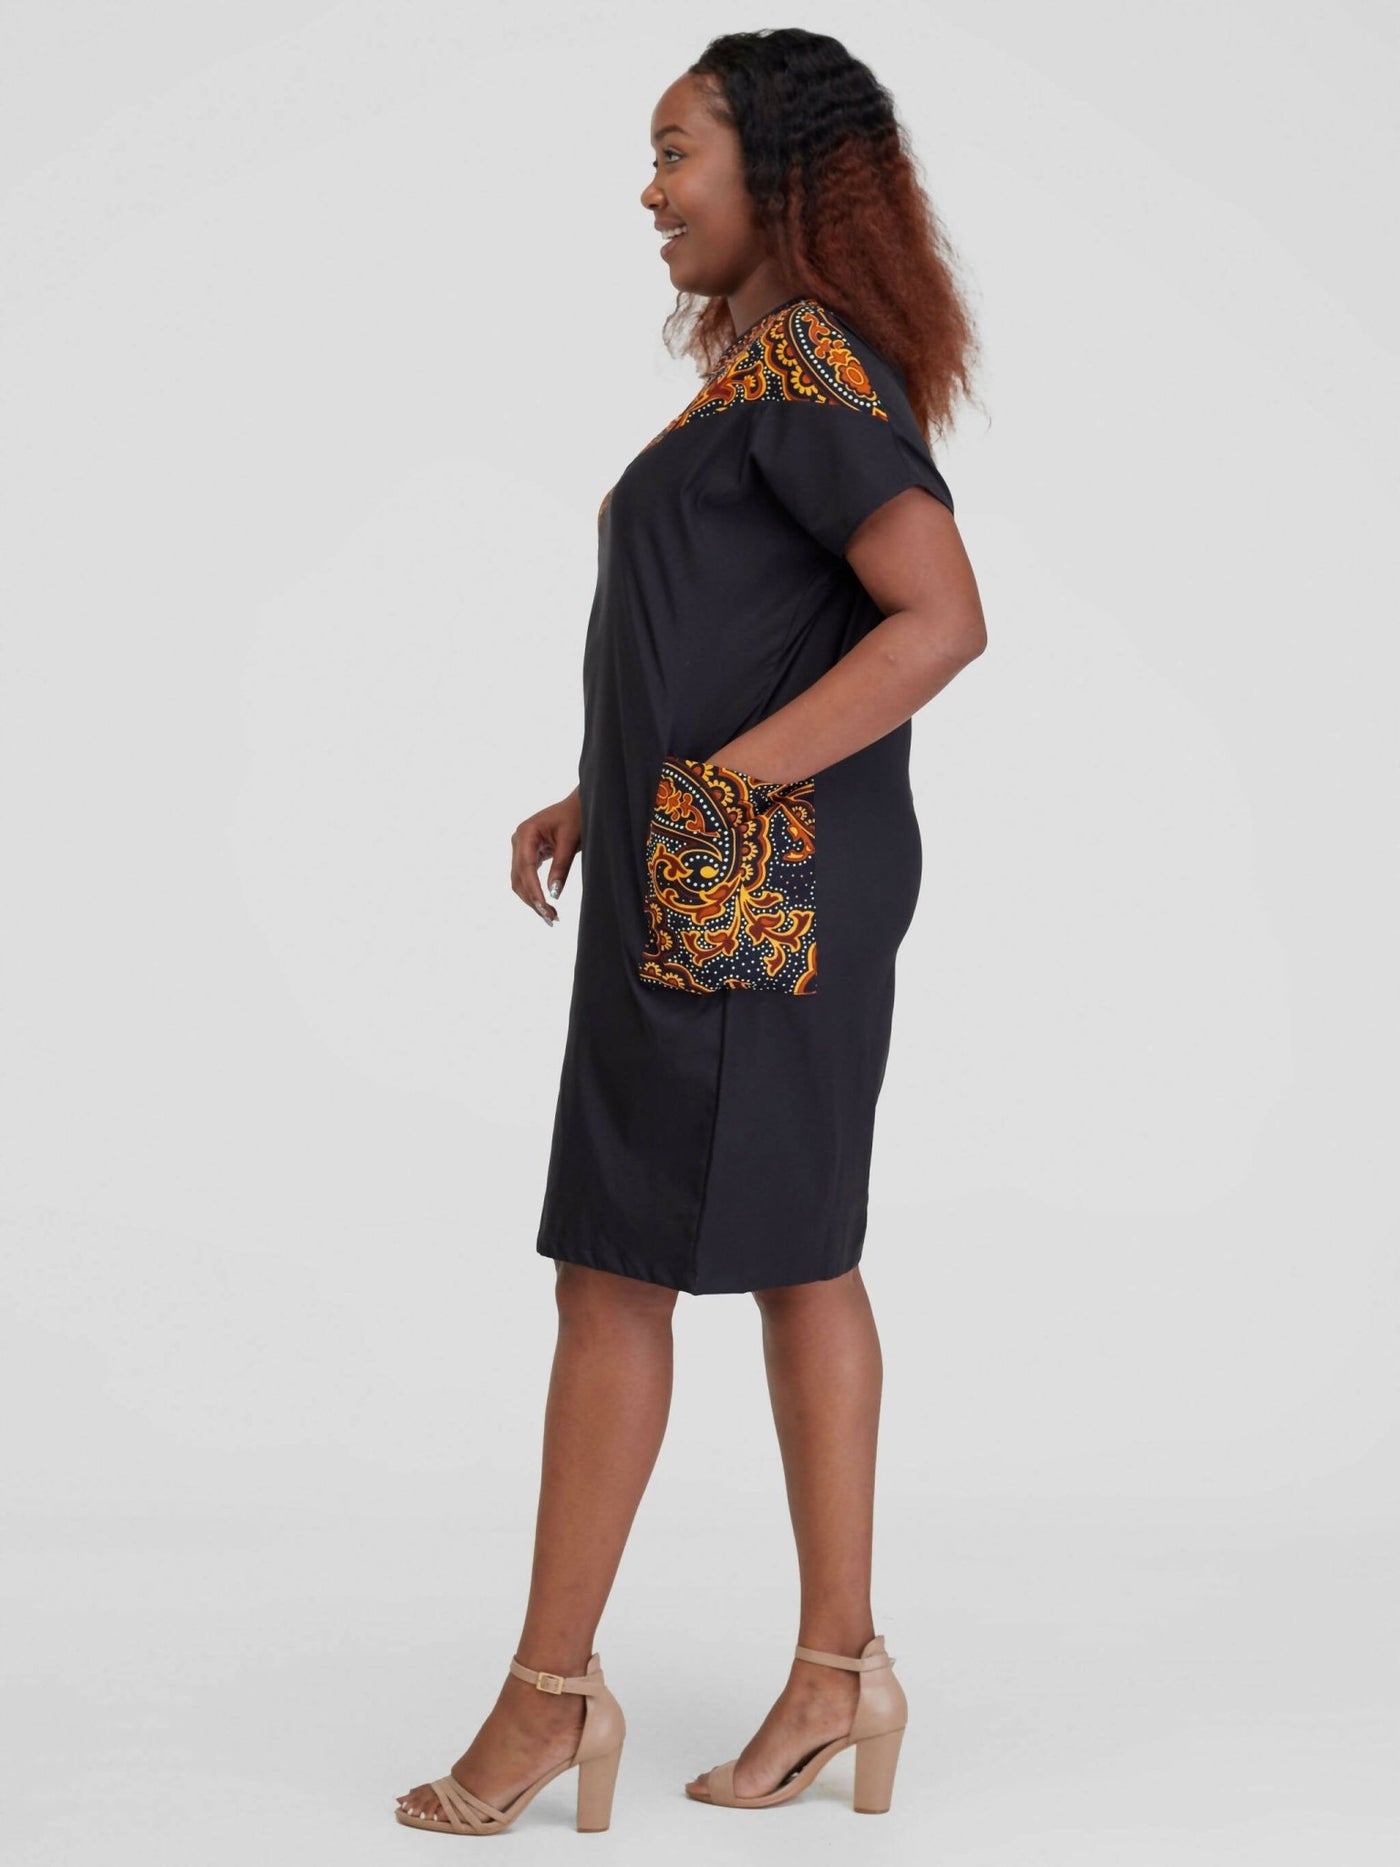 Beqss Zula Dolman Asymmetrical Shift Dress - Black - Shopzetu